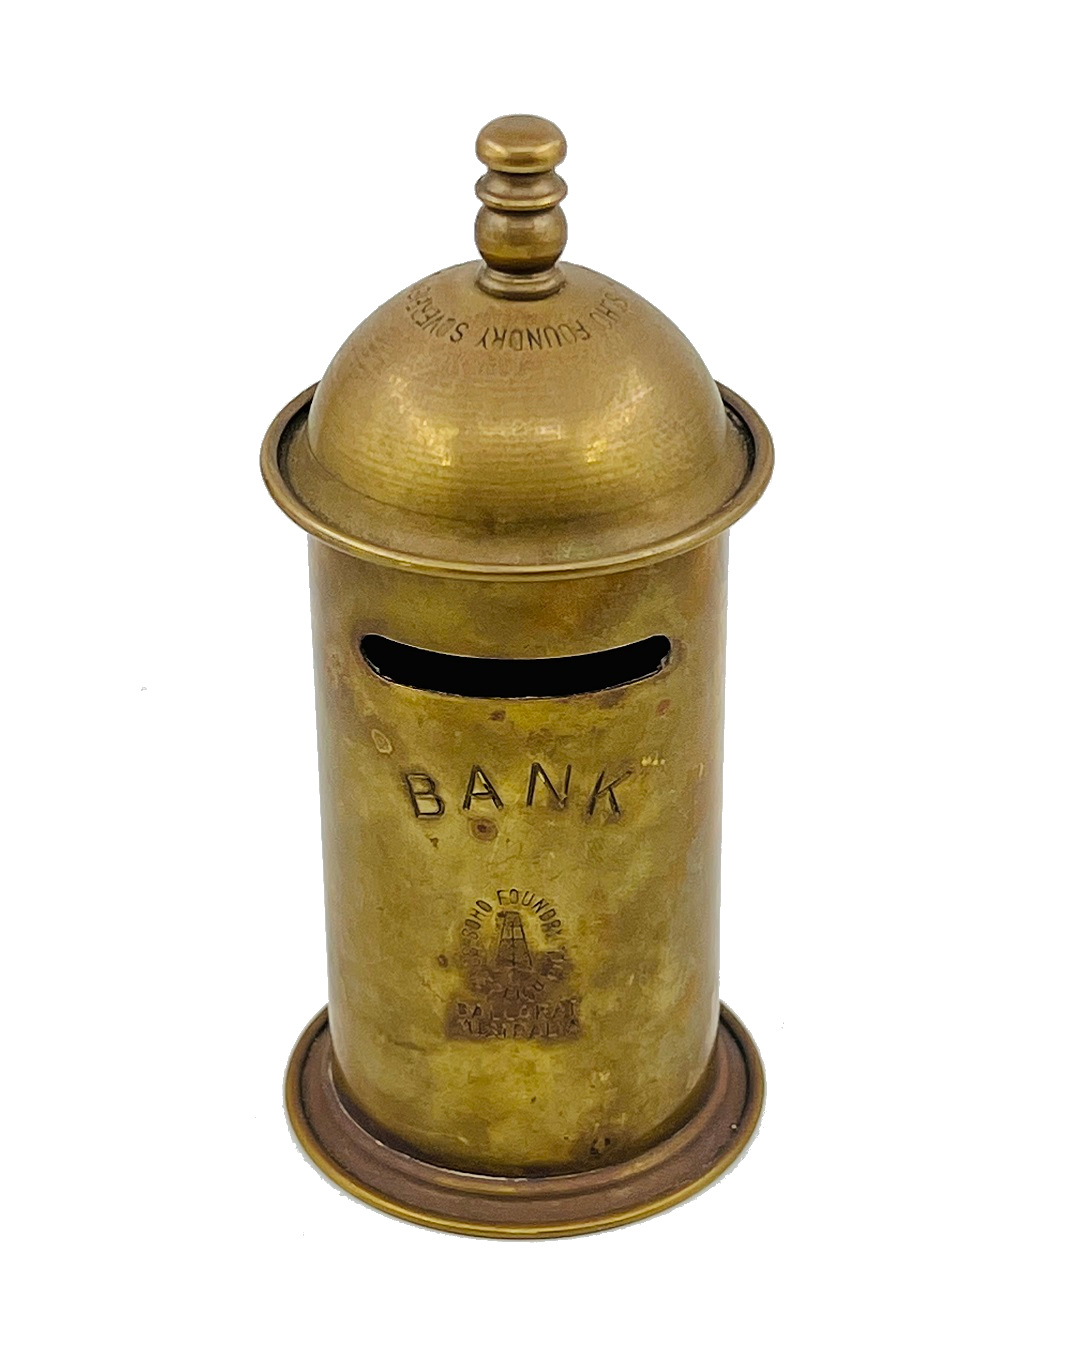 Vintage brass advertising bank